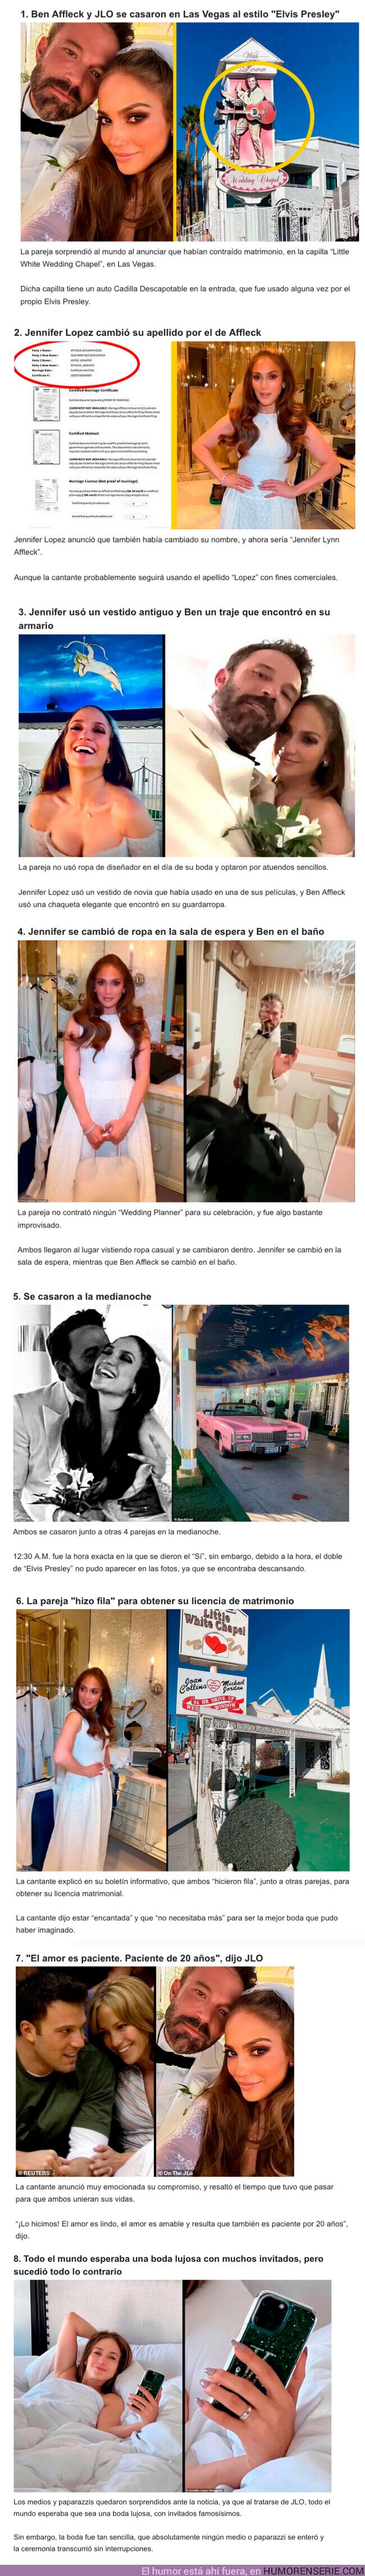 104136 - GALERÍA: 8 cosas locas que pasaron en la boda de Ben Affleck y Jennifer Lopez